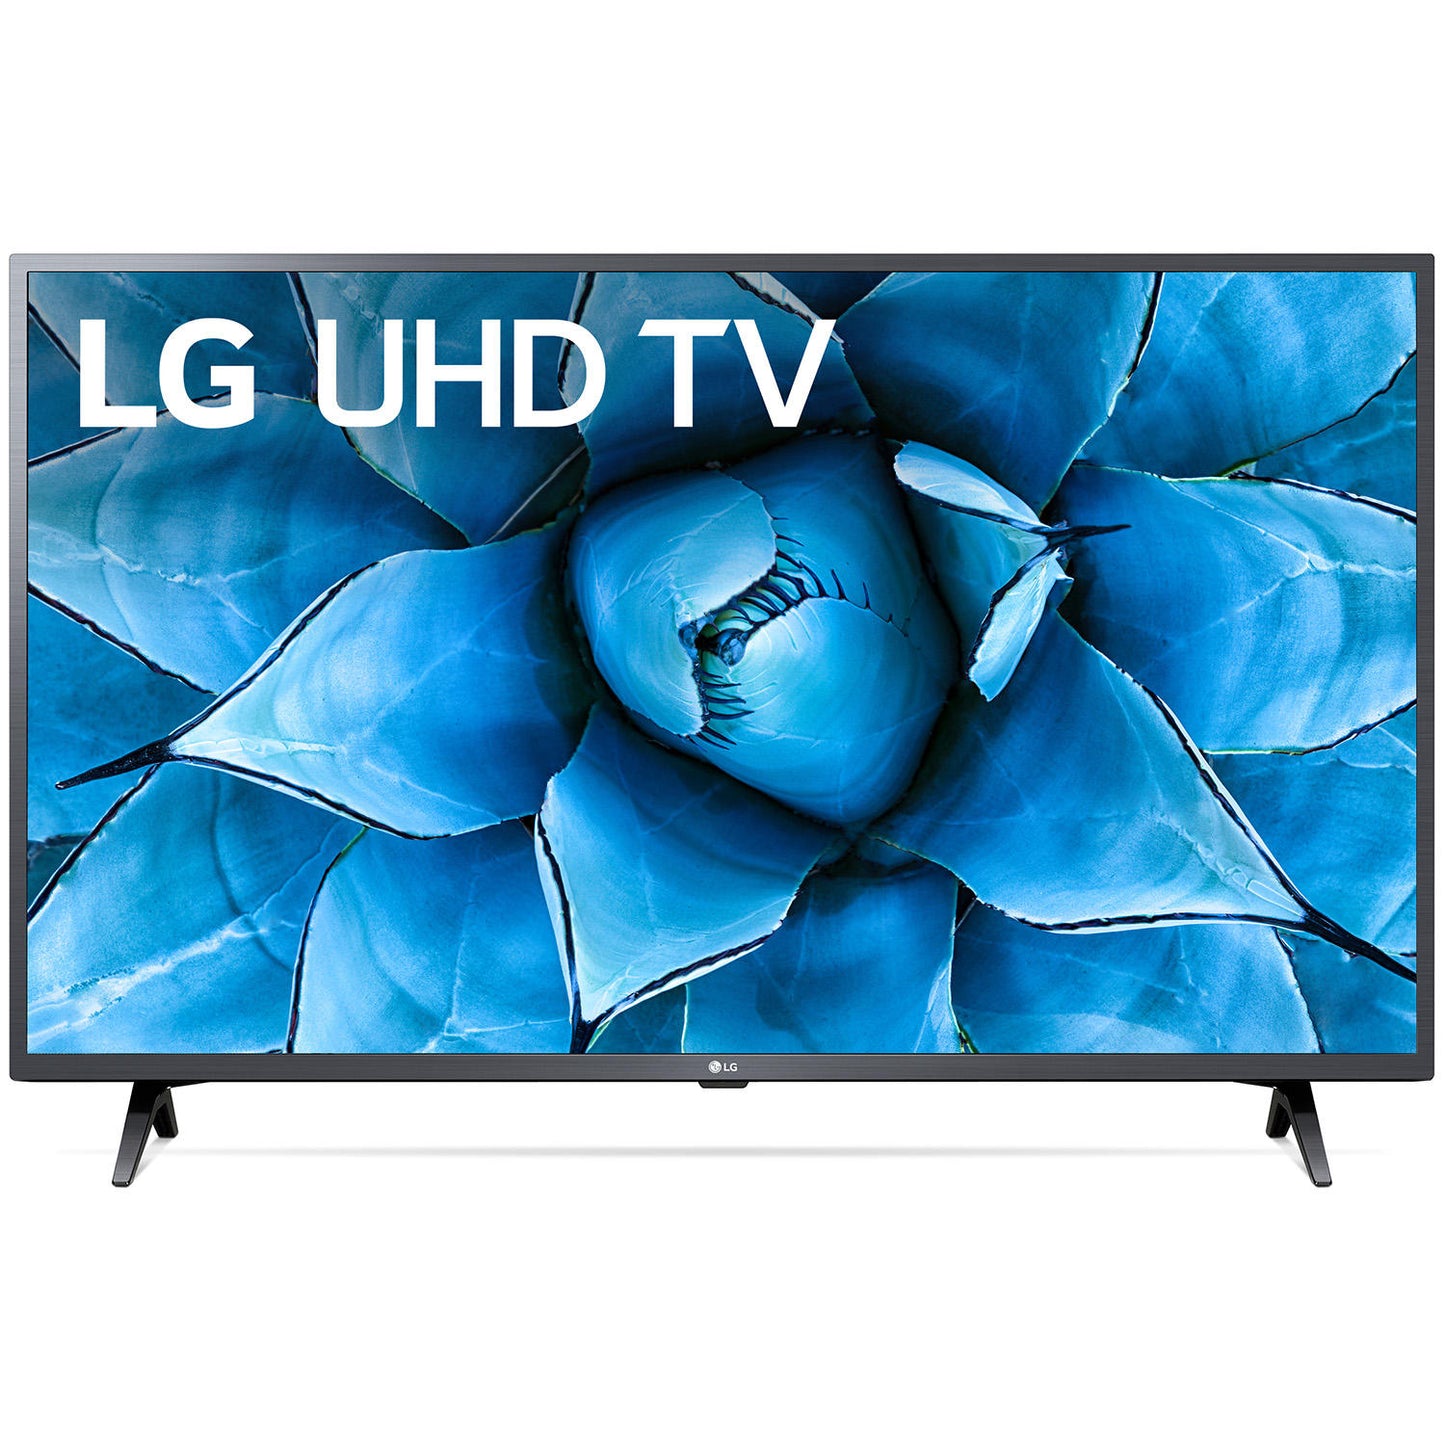 LG 75" Class 4K Smart Ultra HD TV w/ AI ThinQ